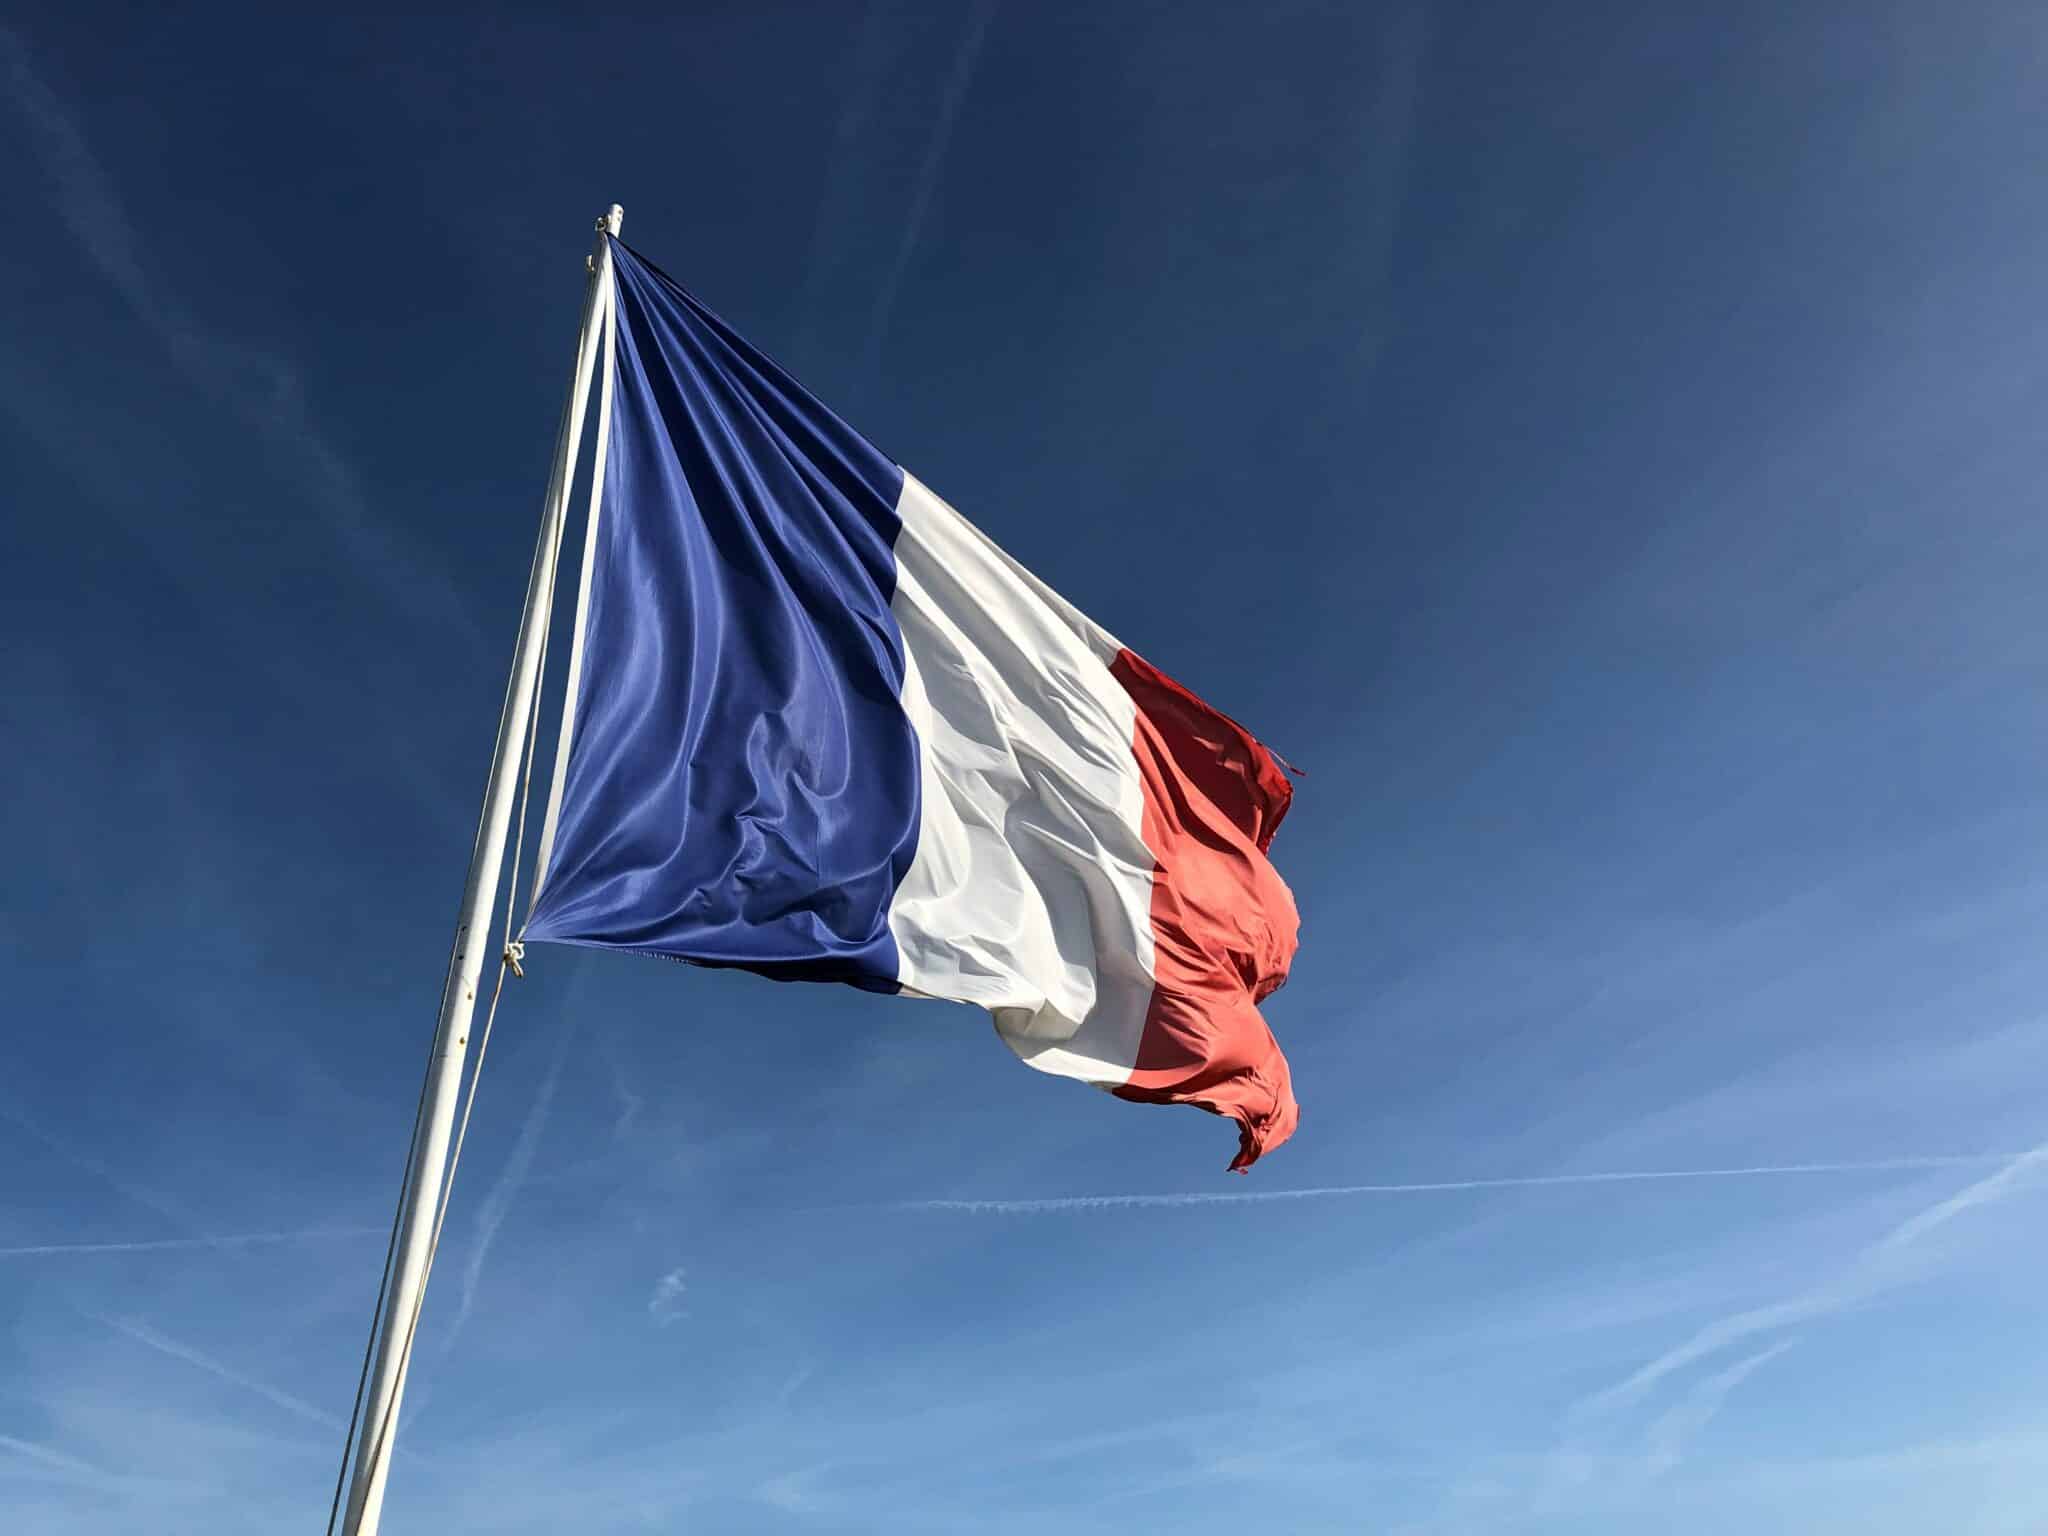 La fête nationale du 14 juillet : un symbole à la Française